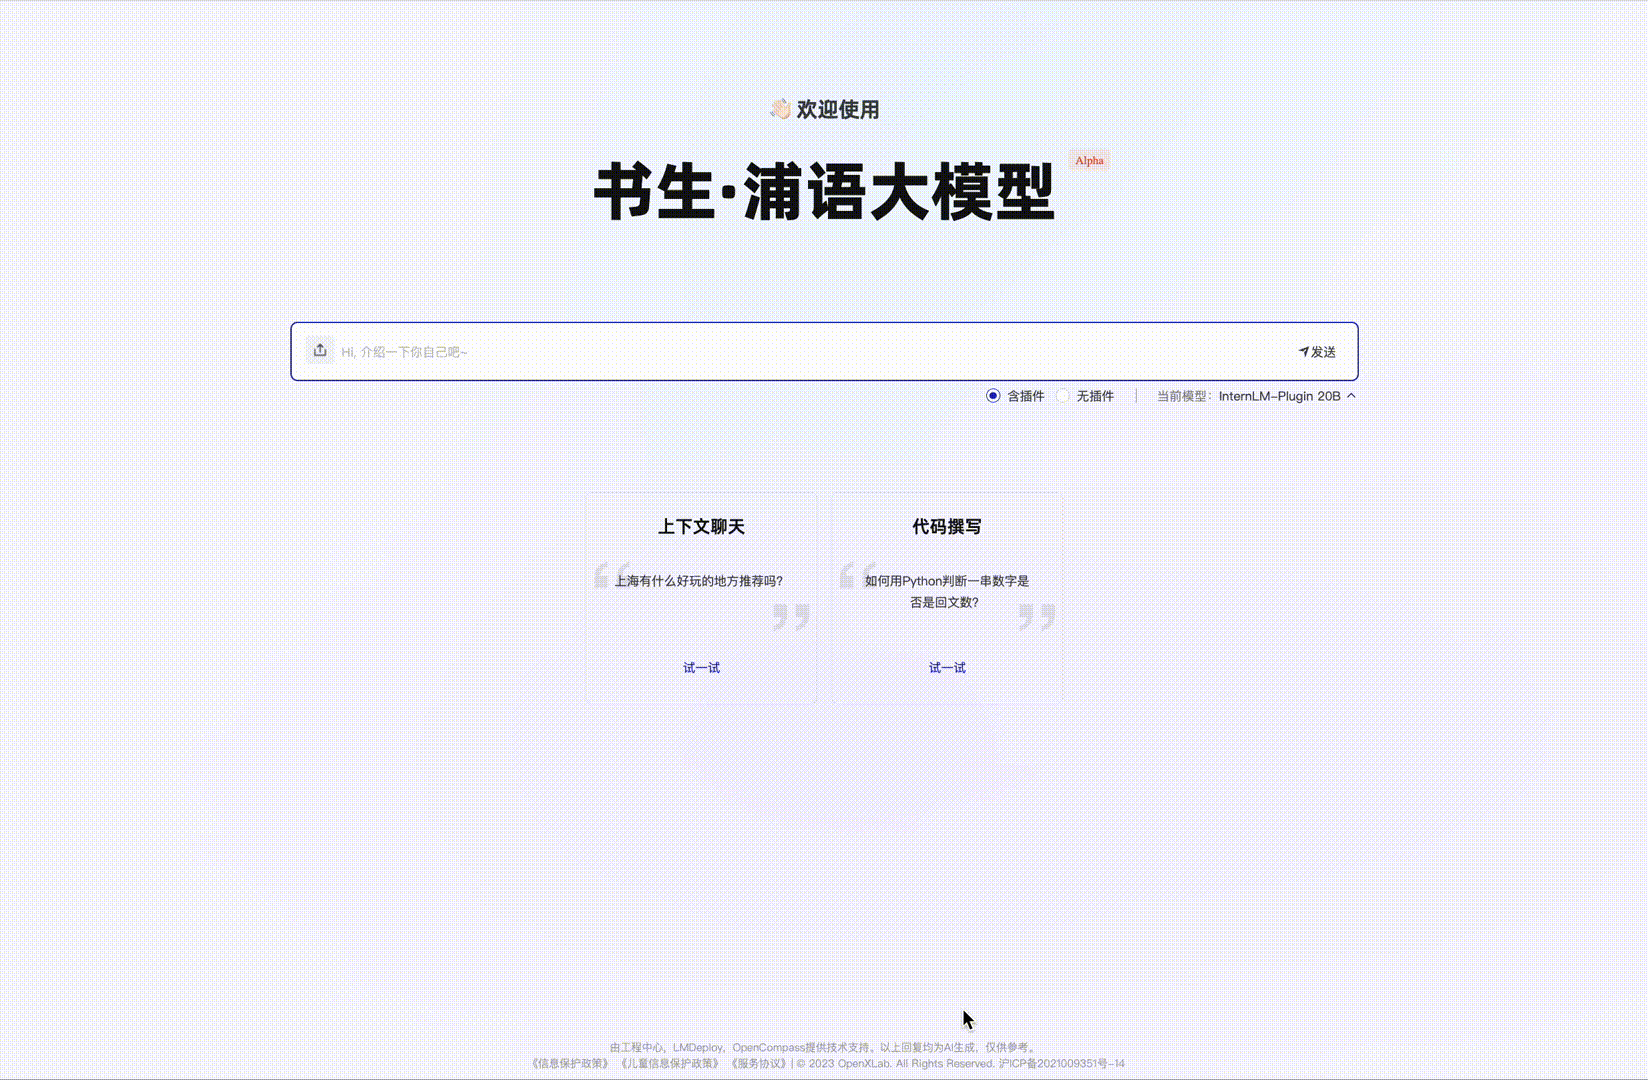 支持200K超长上下文、一次可读30万汉字，“书生·浦语”2.0正式开源